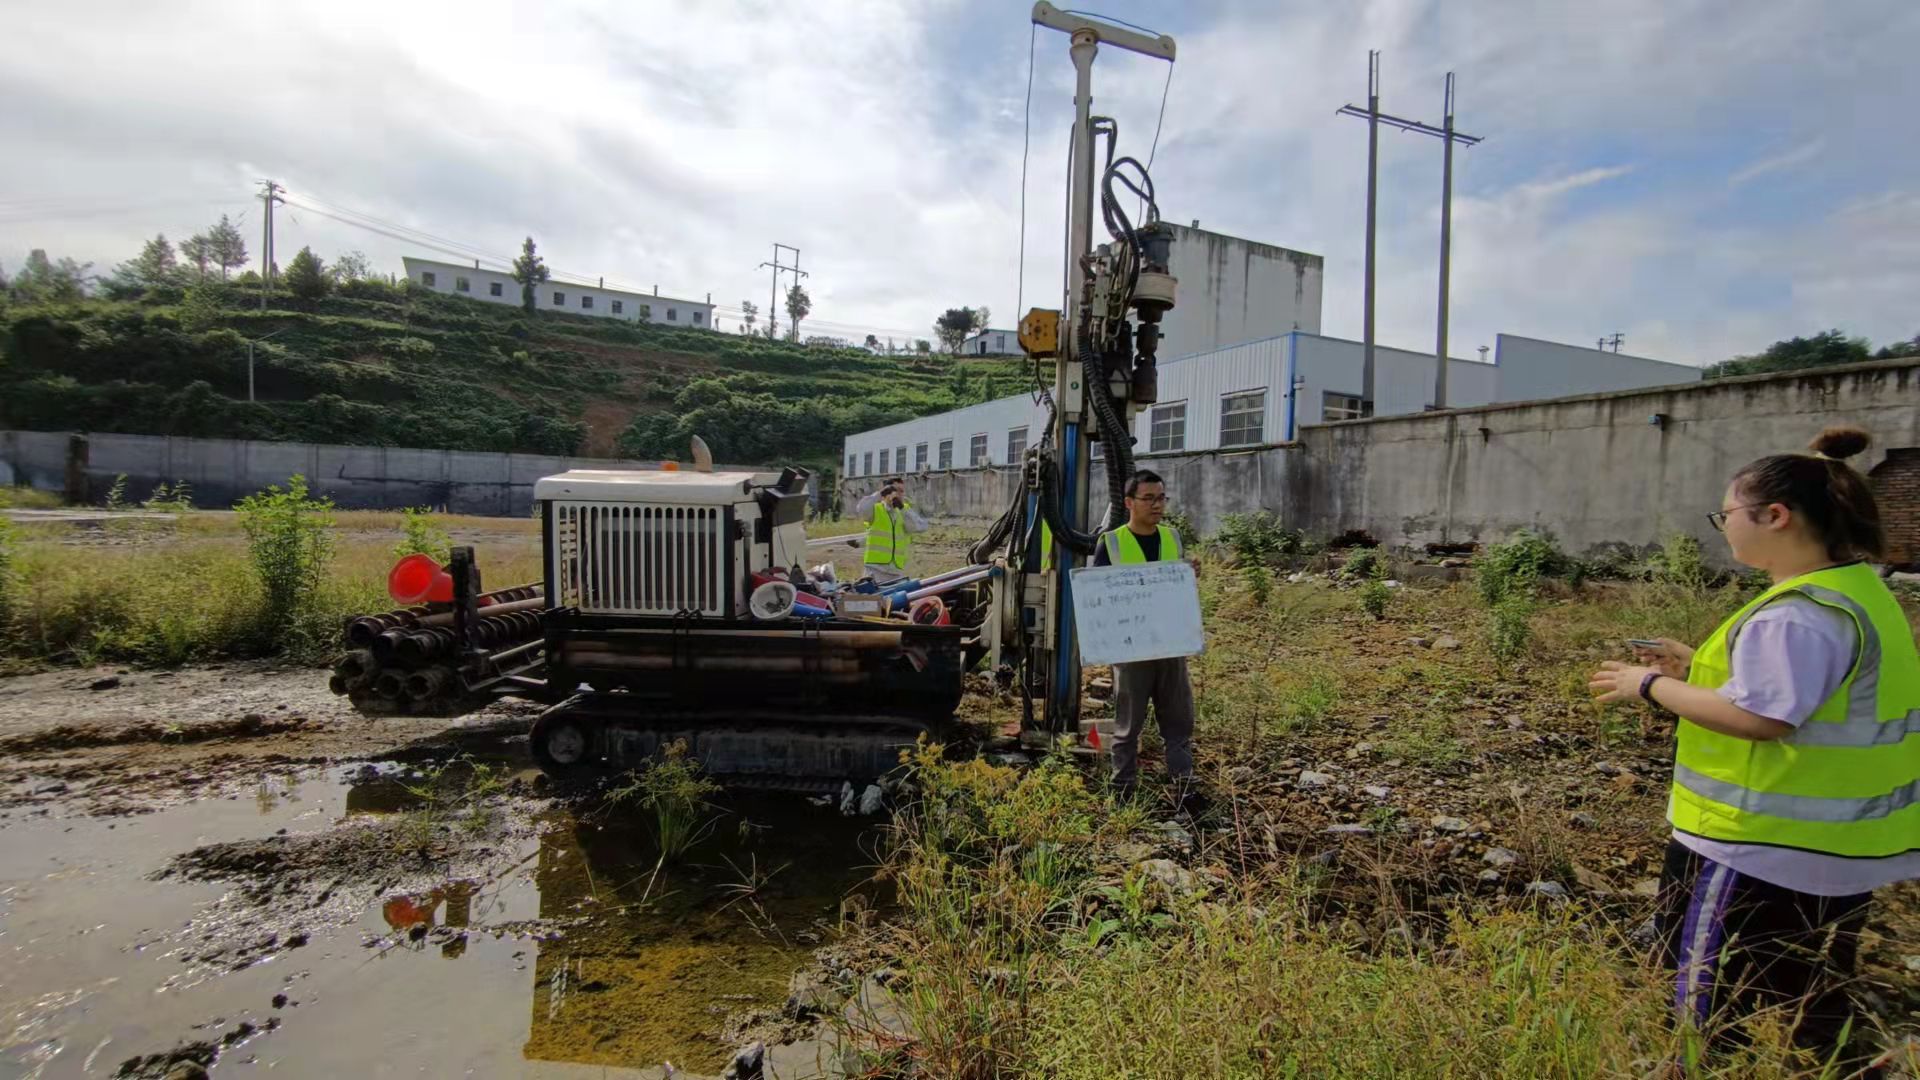 丹江口市神龙化工有限责任公司地块土壤污染初步调查、详细调查及风险评估